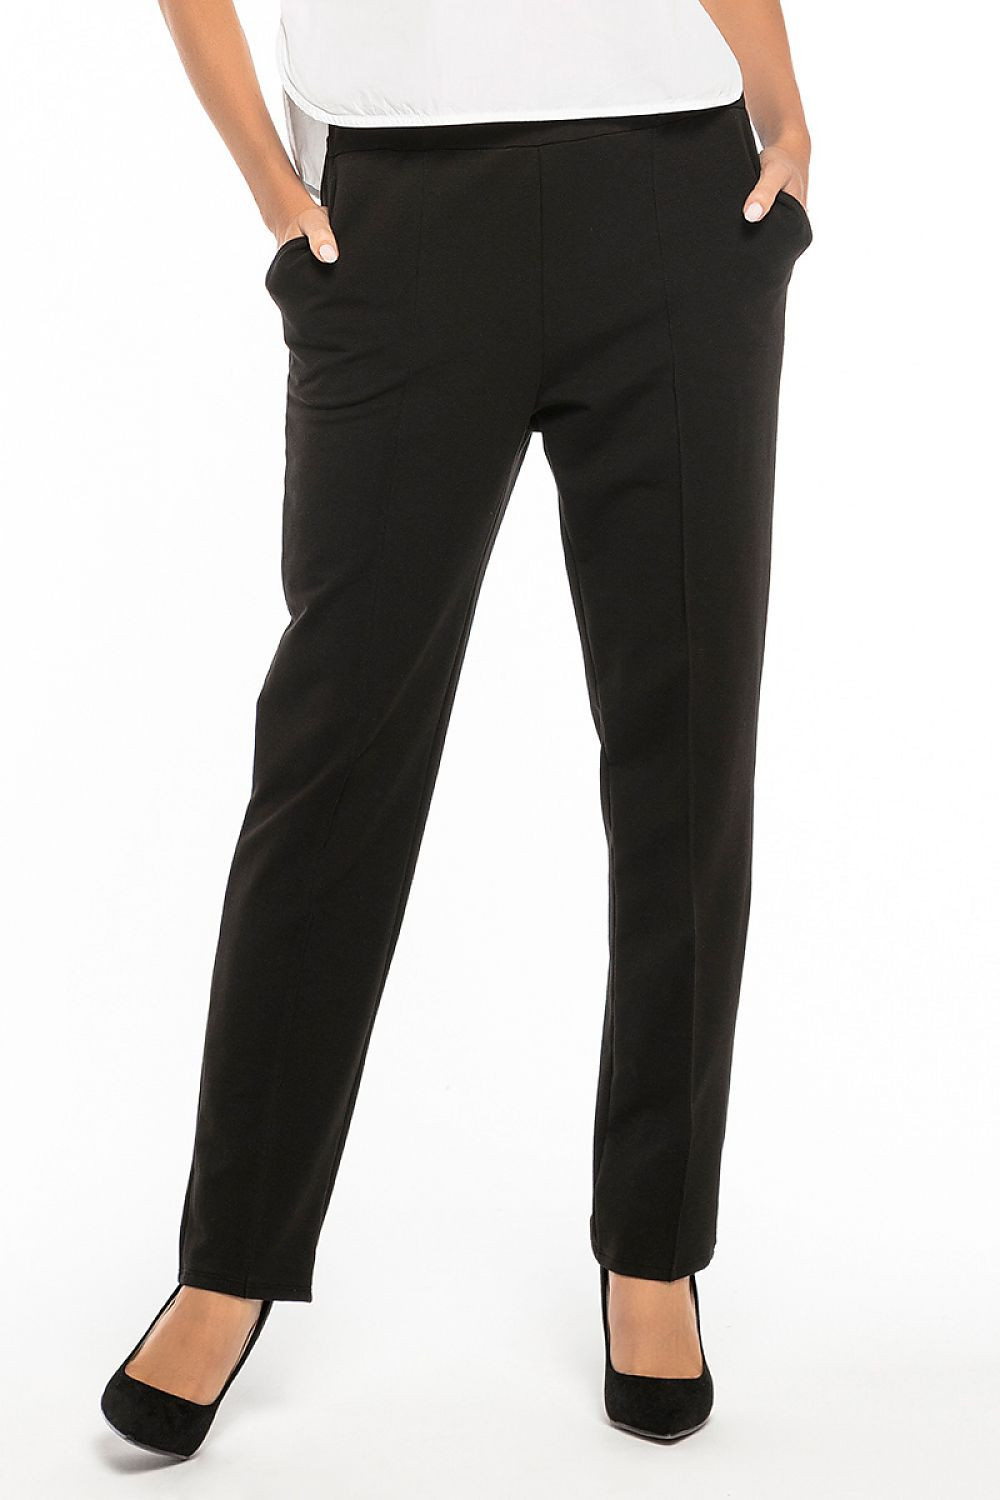 Dámské kalhoty T257/1 - Tessita 42/XL černá